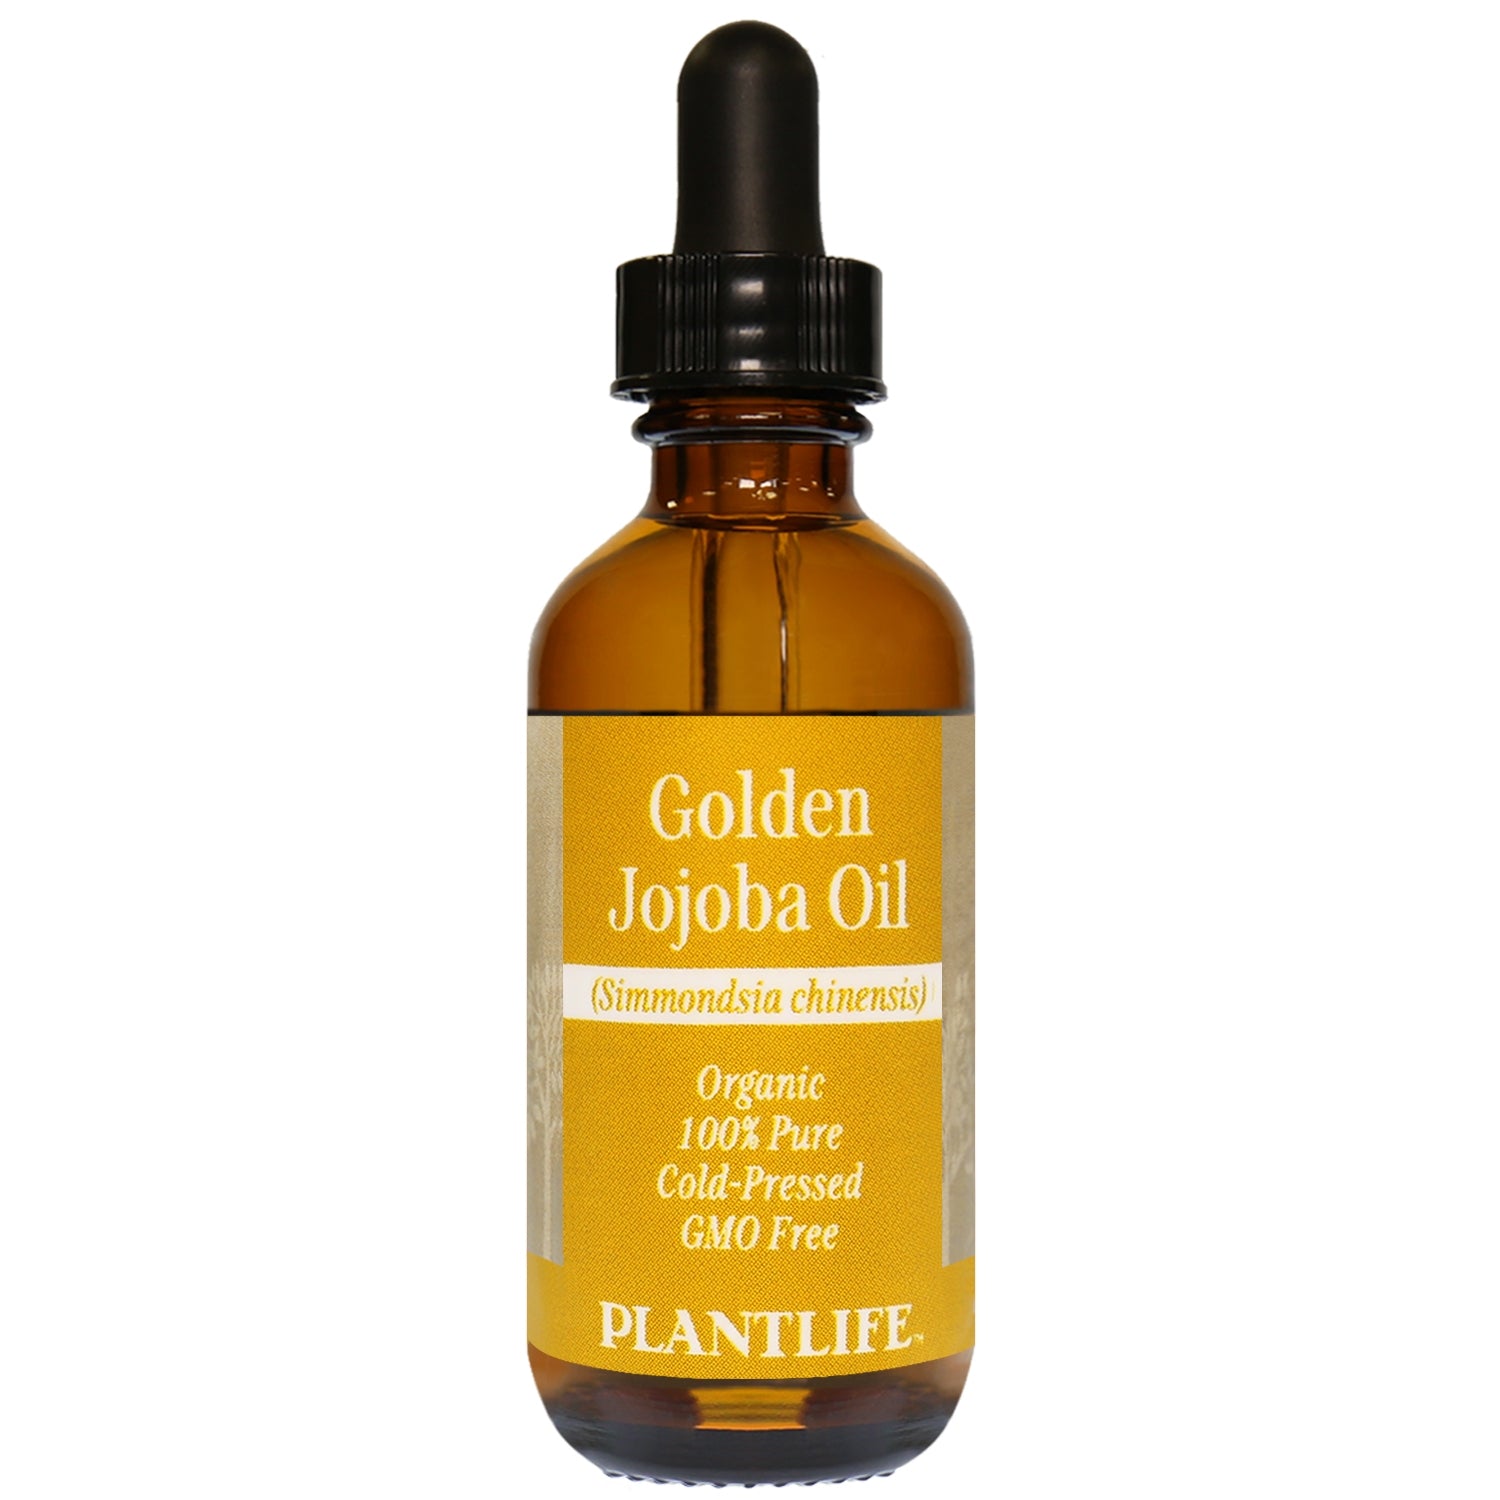 Golden jojoba oil 2oz